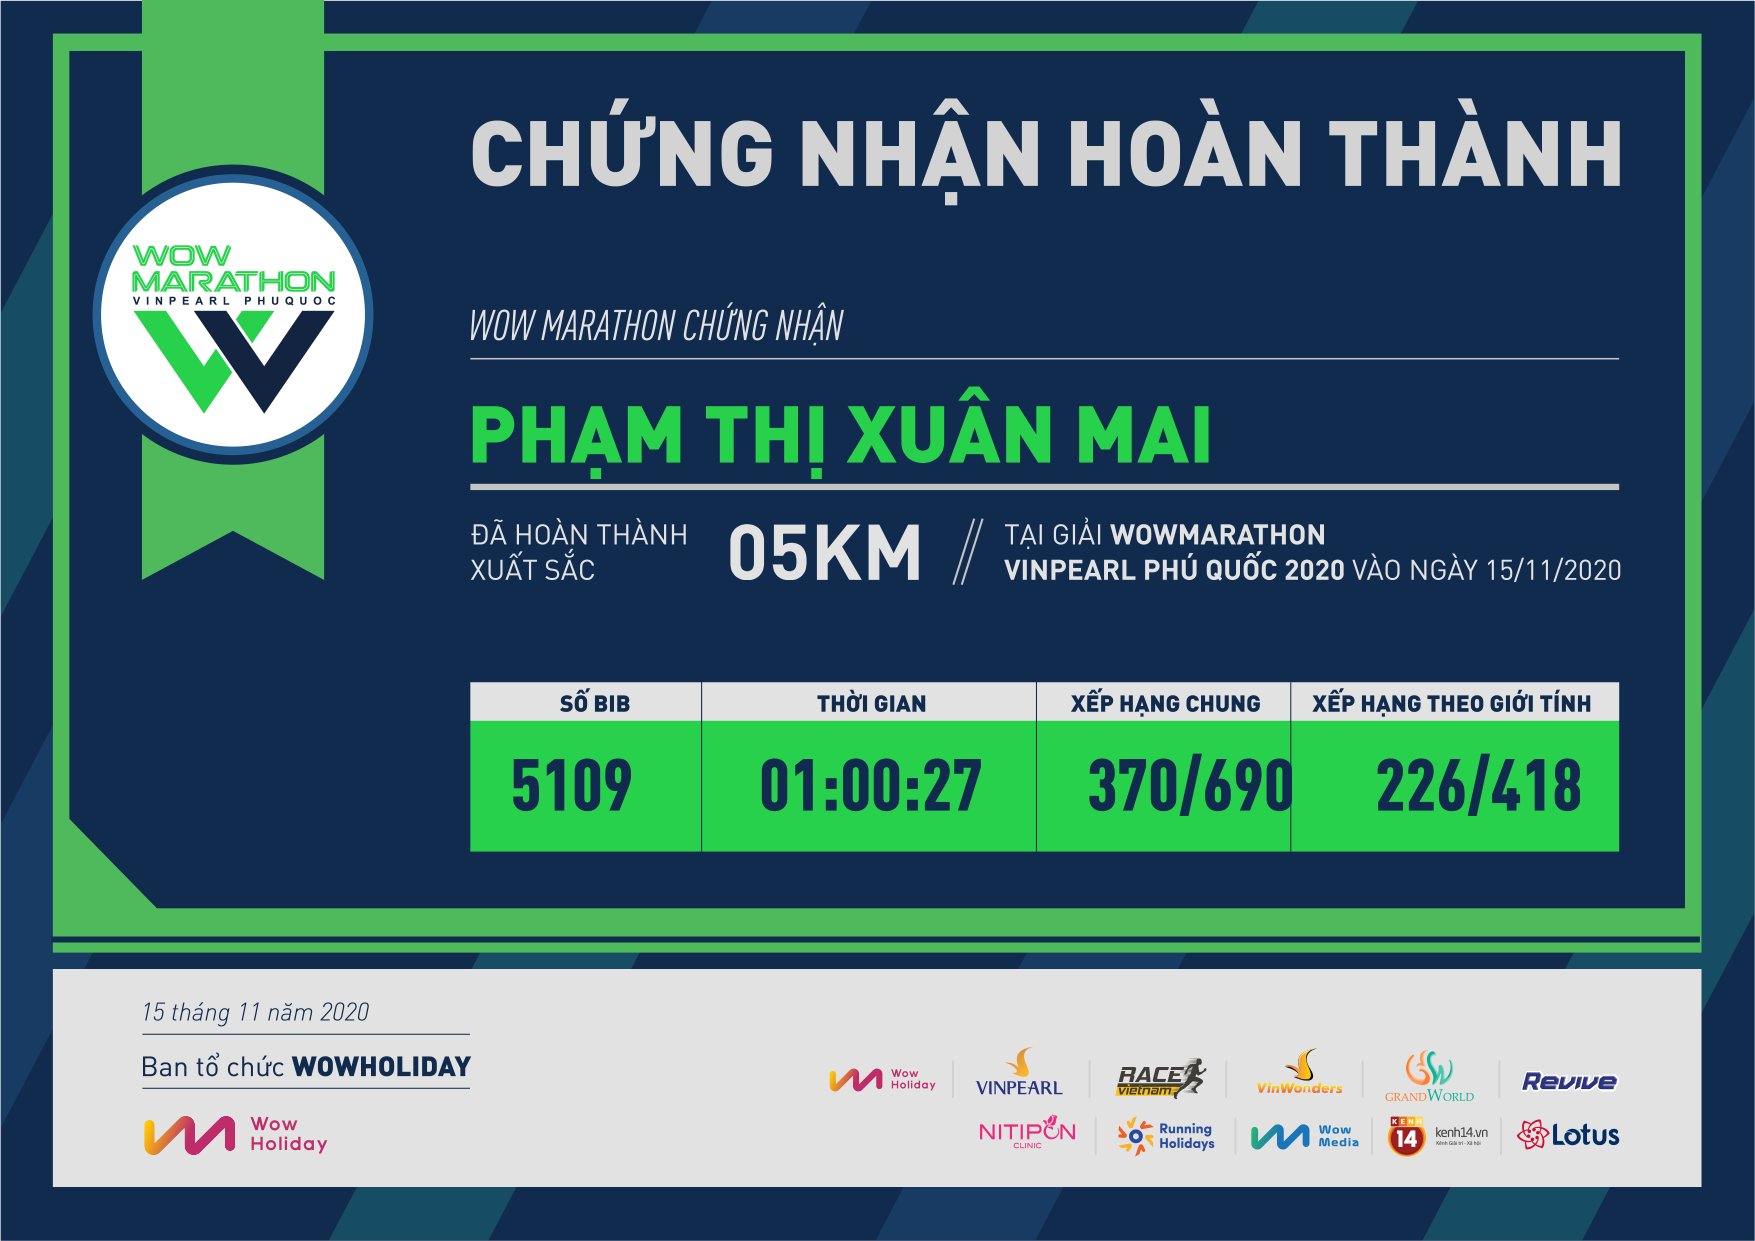 5109 - Phạm Thị Xuân Mai